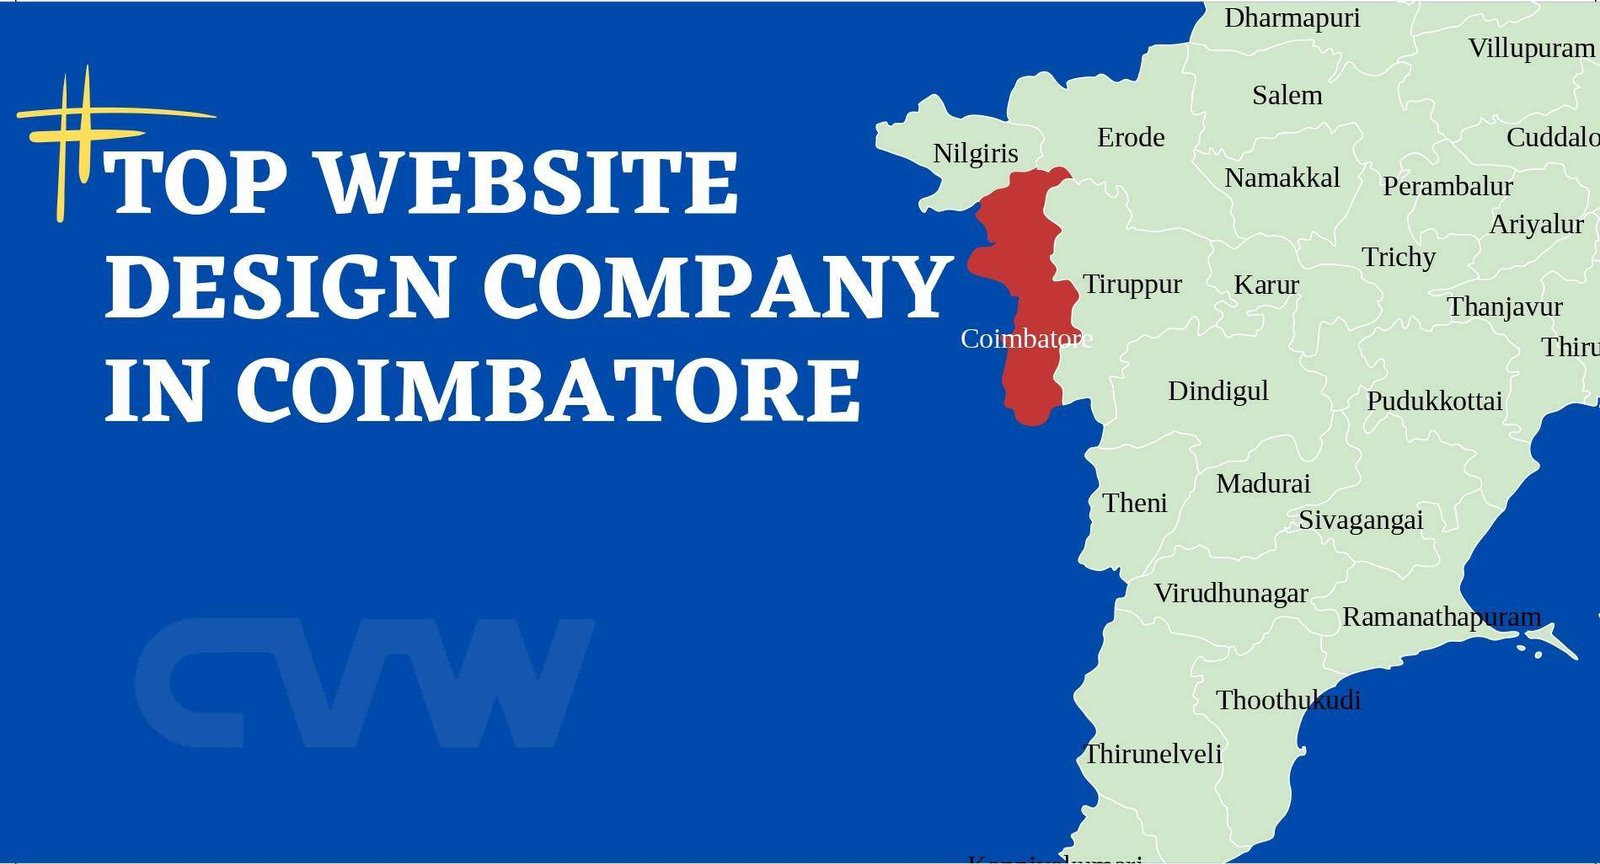 Top Website Design Companies in Coimbatore